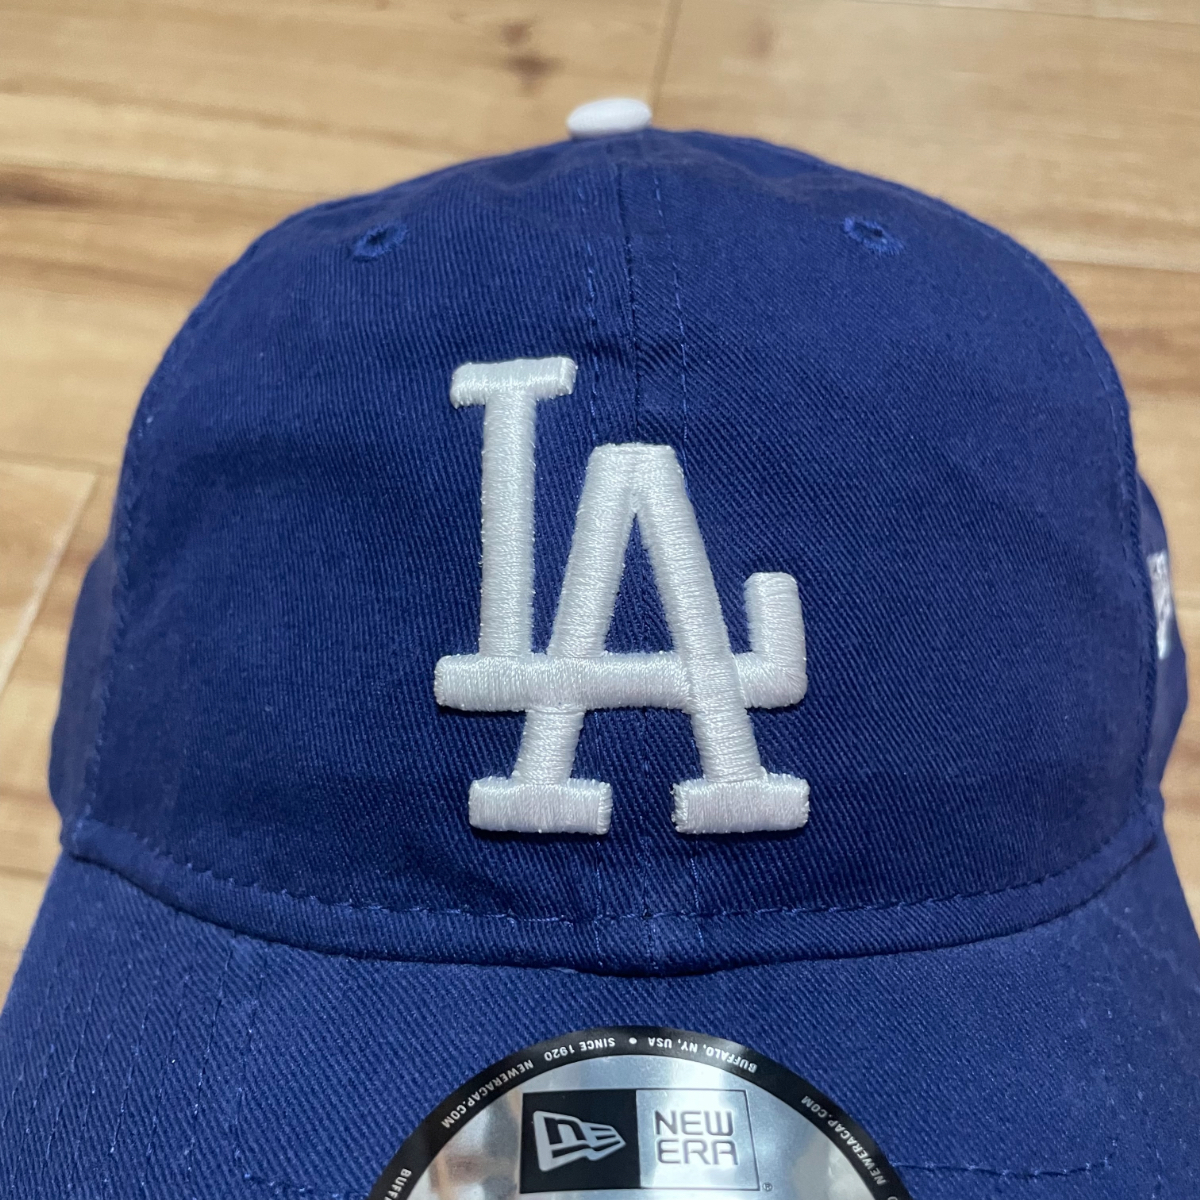 NEWERA 【9Twenty】 ニューエラ ストラップバックキャップ 帽子 Dodgers / ロサンゼルス・ドジャース サイズ調節可能 USA正規品 青_画像2